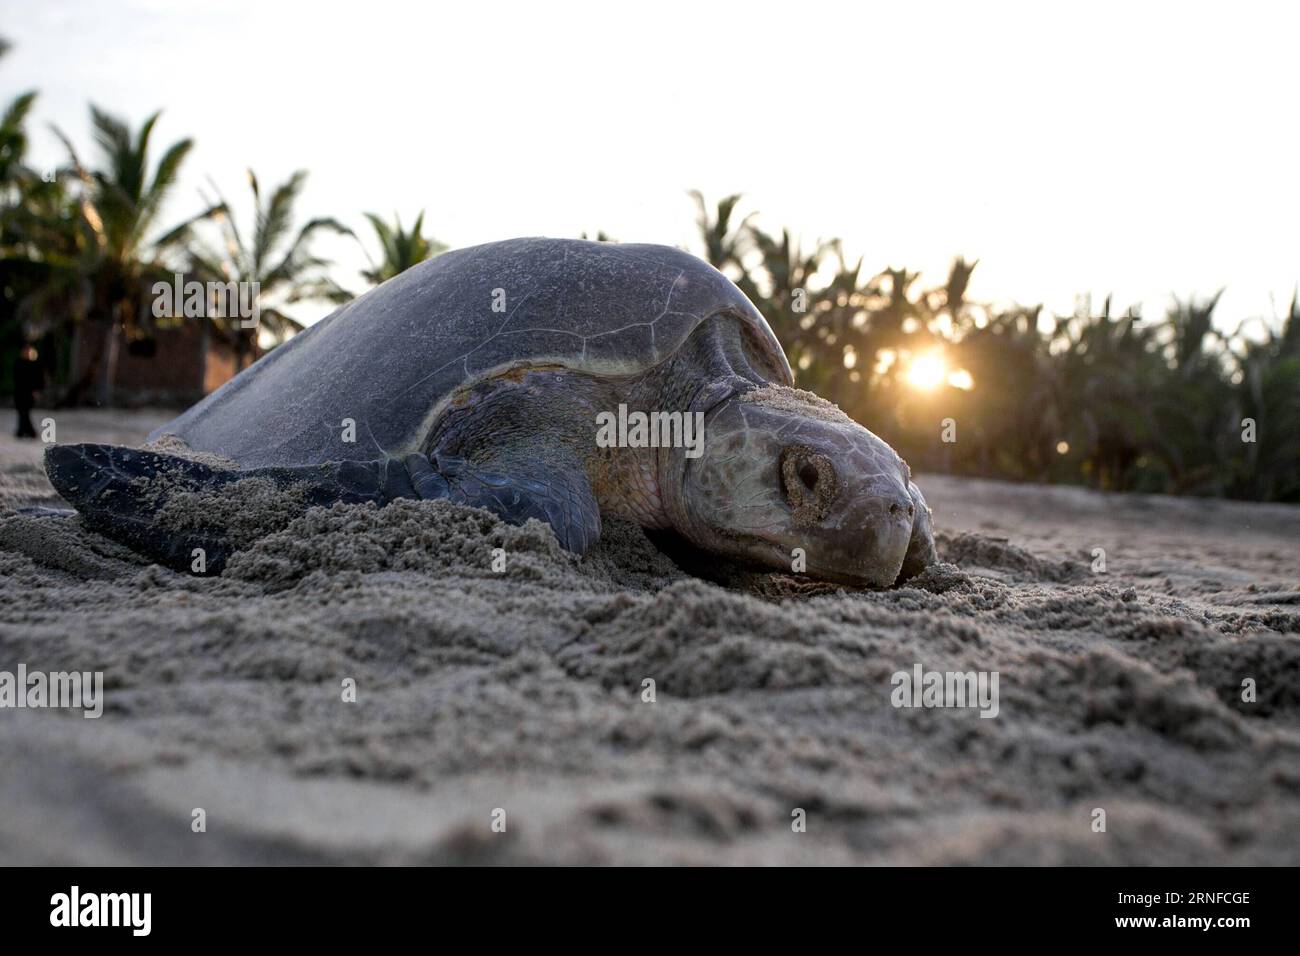 (160801) -- MICHOACAN, 1 agosto 2016 -- una tartaruga ridley oliva è stata vista sulla spiaggia di Ixtapilla nello stato di Michoacan, Messico, il 31 luglio 2016. Alla fine di luglio, migliaia di tartarughe di olivo ridley hanno strisciato lungo la costa del Pacifico per riprodursi, soprattutto negli stati di Michoacan e Oaxaca. Armando Solis)(zcc) MESSICO-MICHOACAN-AMBIENTE-FAUNA ArmandoxSol¨ªs PUBLICATIONxNOTxINxCHN 160801 Michoacan 1 agosto 2016 a Olive Ridley Turtle IS Lakes SULLA spiaggia di Ixtapilla nello Stato di Michoacan Messico IL 31 2016 luglio ALLA fine di luglio migliaia di tartarughe Olive Ridley hanno strisciato attraverso il Pa Foto Stock